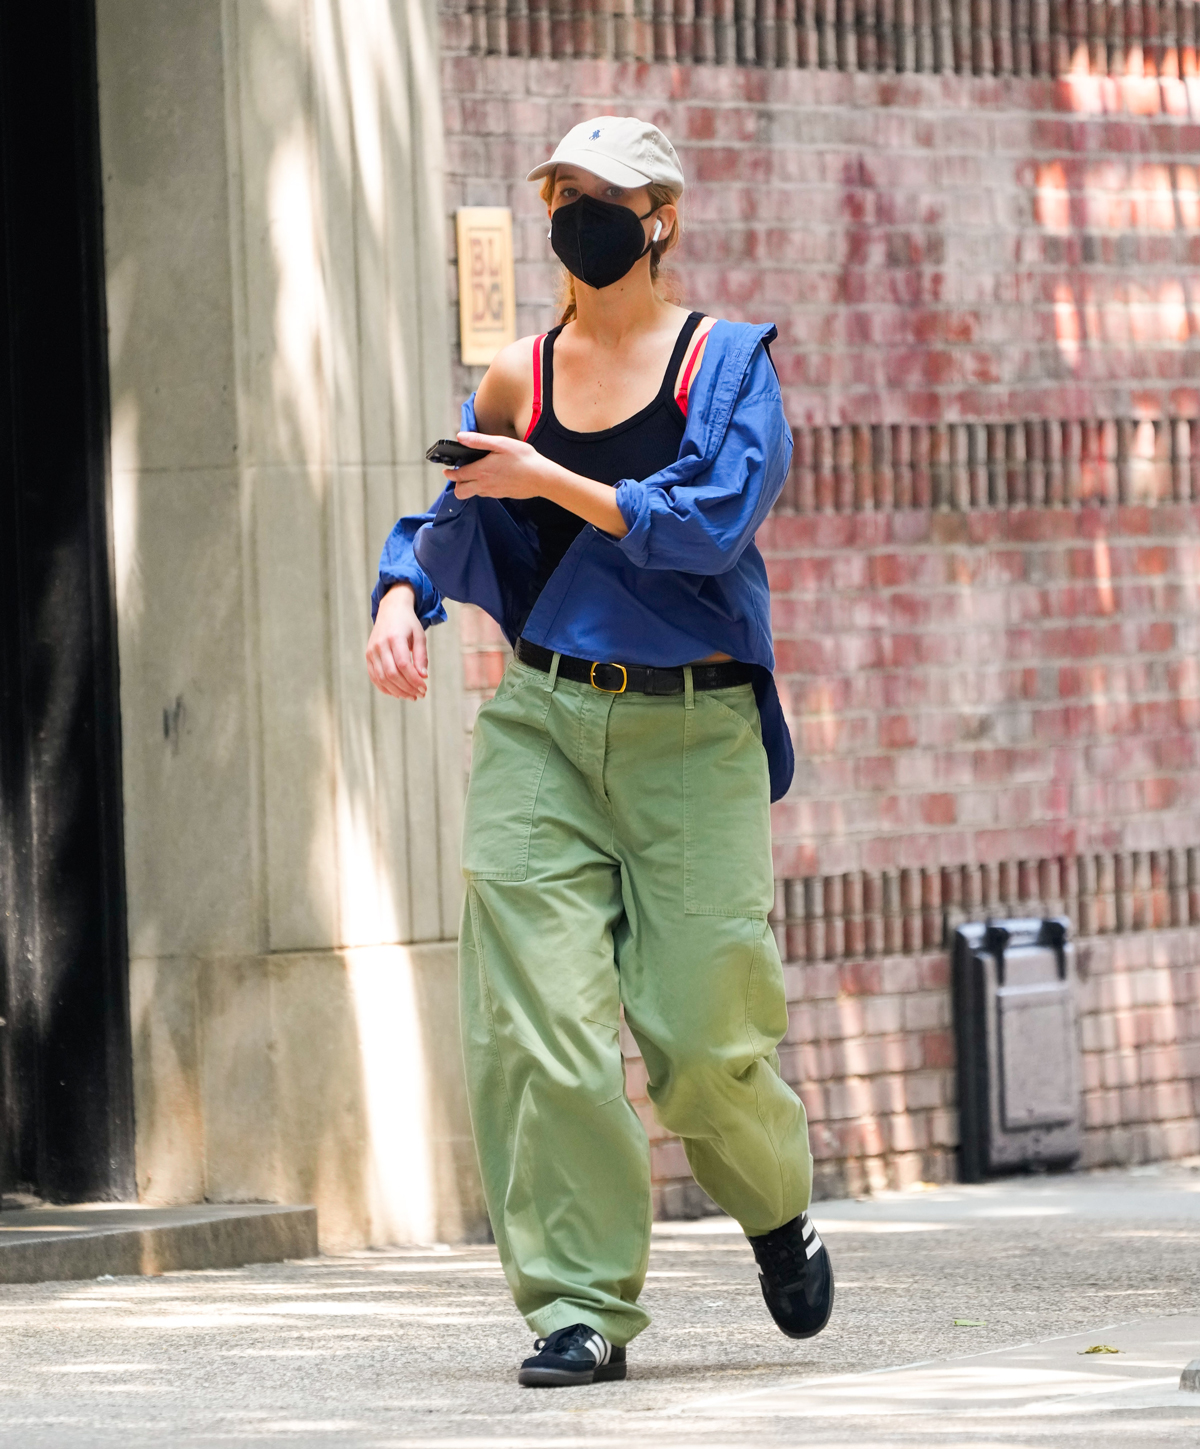 Jennifer Lawrence połączyła czarne sneakersy adidas Samba ze spodniami cargo w kolorze khaki, czarnym topem i niebieską kurtką. Aktorka została sfotografowana w casualowej stylizacji podczas porannego spaceru.